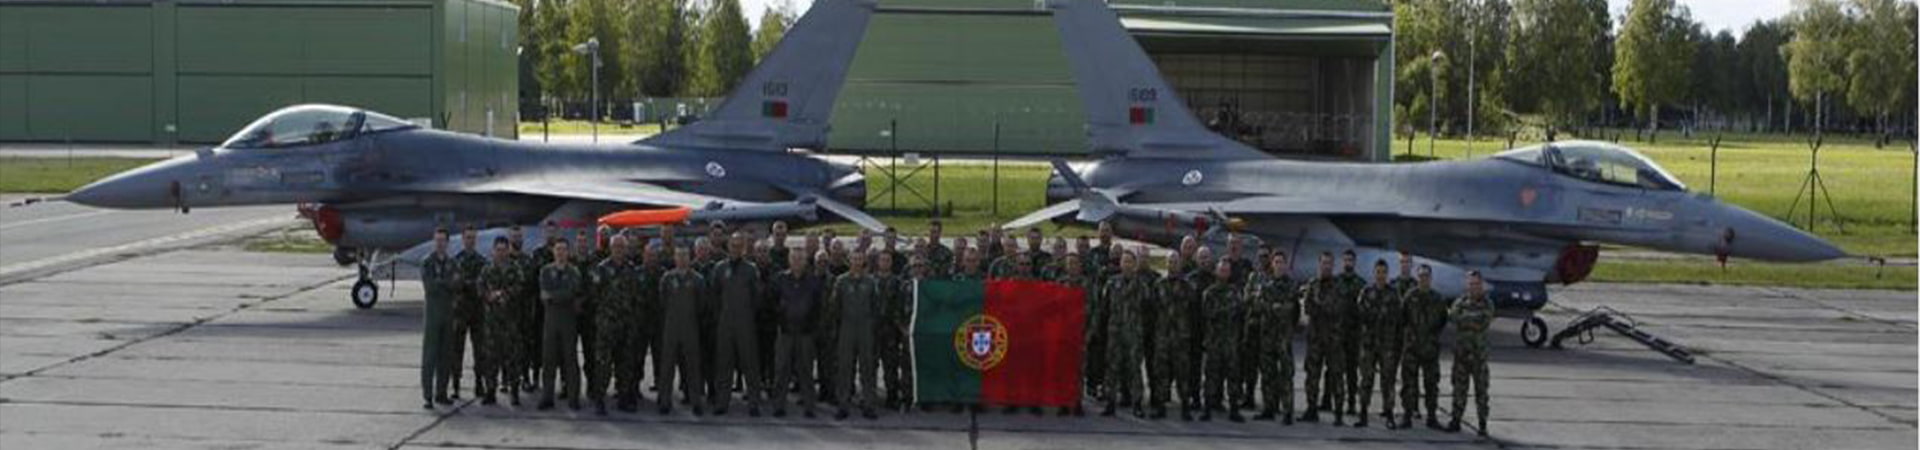 Foto de Grupo de militares e aviões portugueses